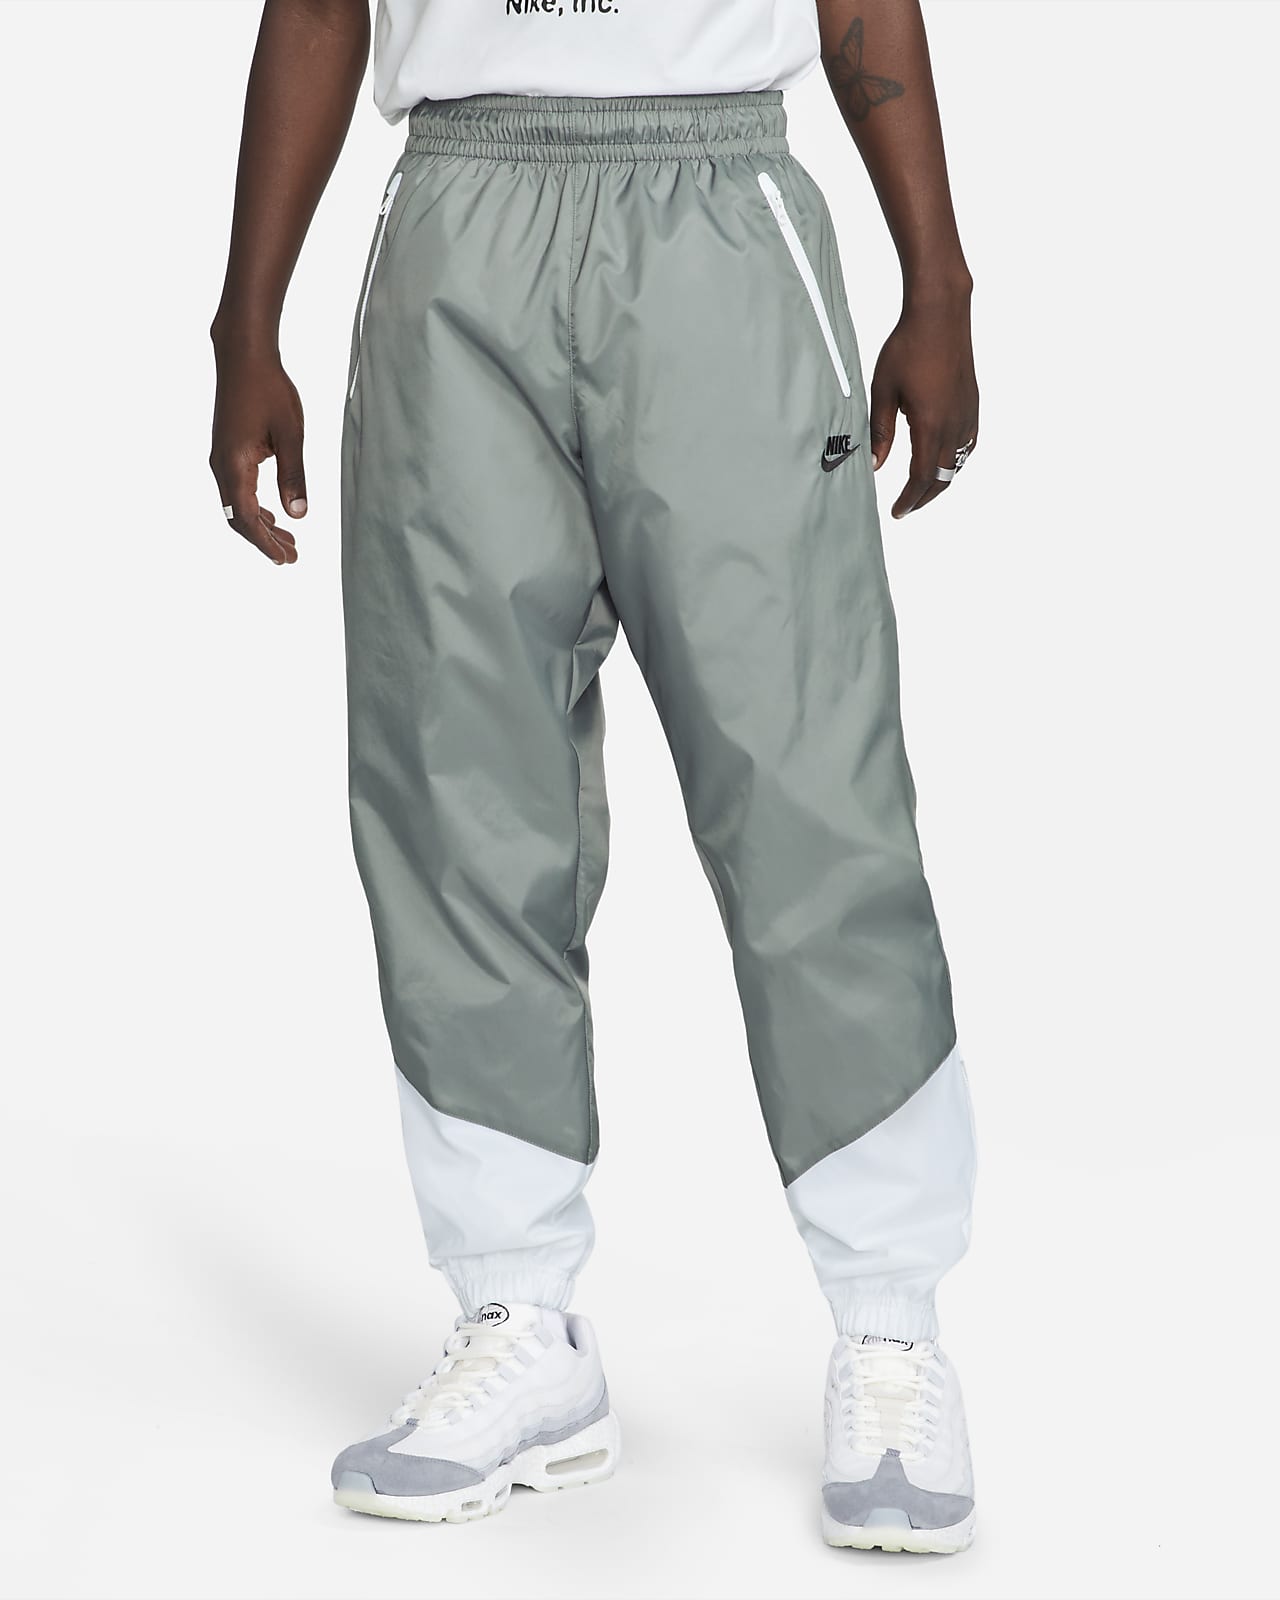 Pants de tejido Woven para Nike Nike.com